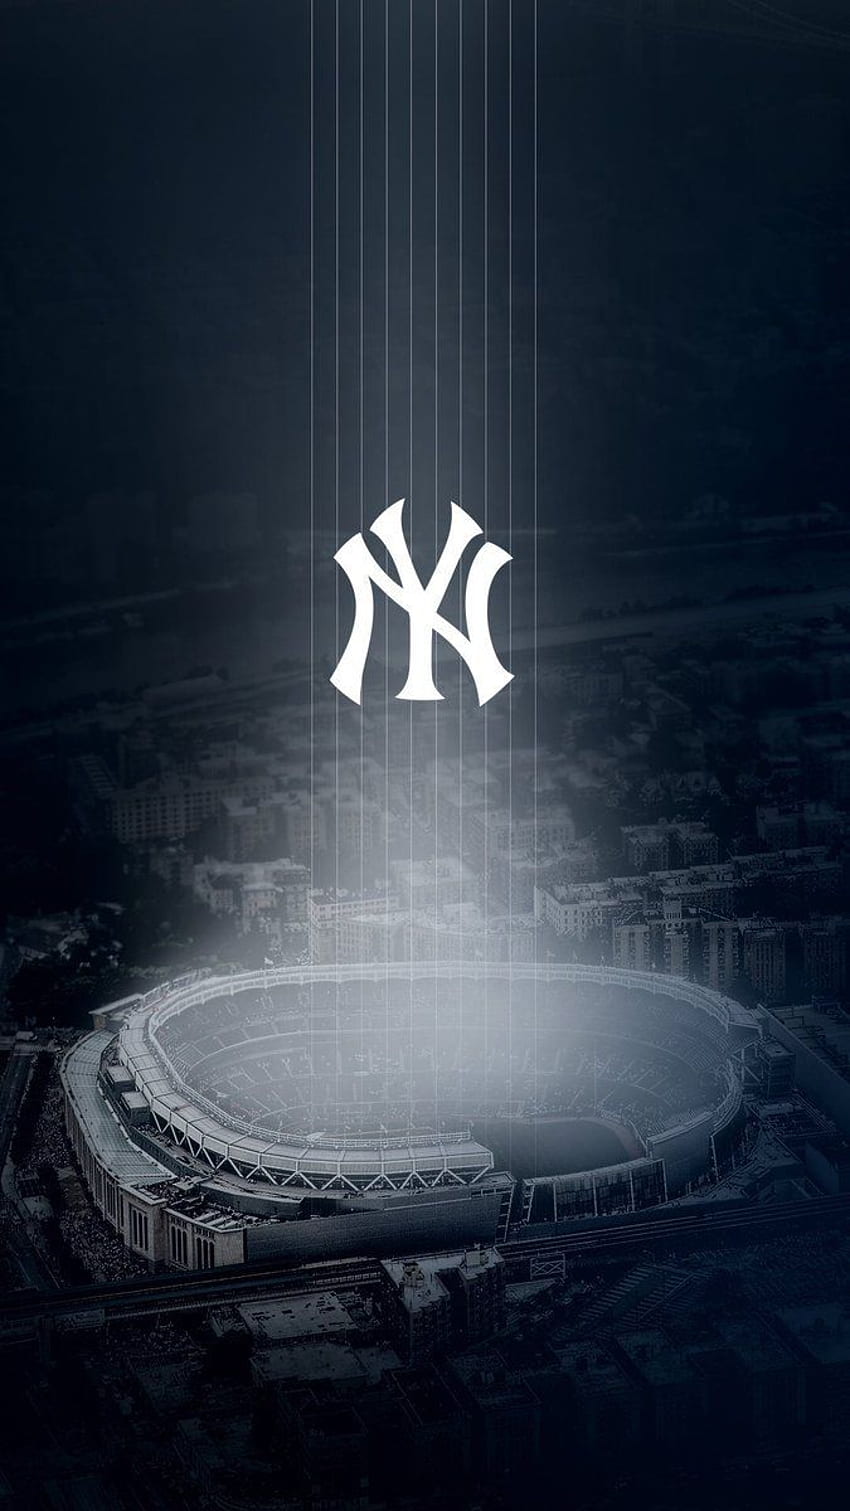 Google-Ergebnis für Medien. New York Yankees Logo, New York Yankees, New York Yankees Stadium, coole New York Yankees HD-Handy-Hintergrundbild